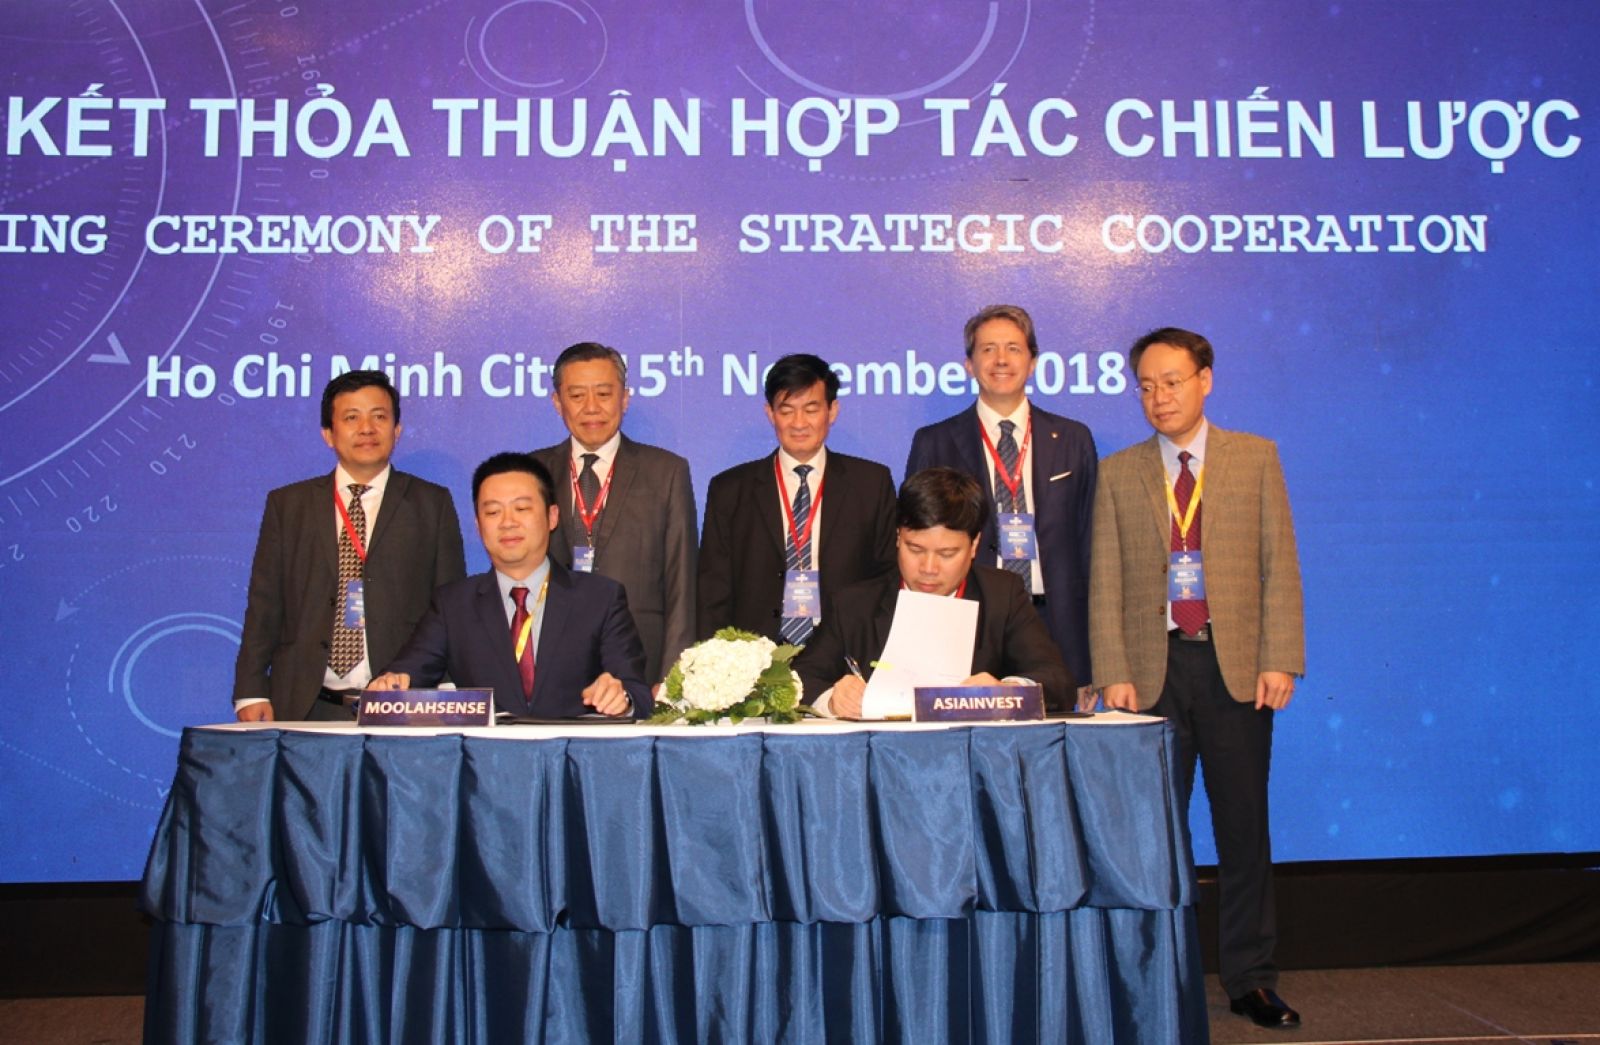 Lễ ký Thỏa thuận hợp tác giữa Tập đoàn AsiaInvest và MoolahSense, nhằm đáp ứng nhanh nhu cầu vay vốn của doanh nghiệp vừa và nhỏ tại Việt Nam.